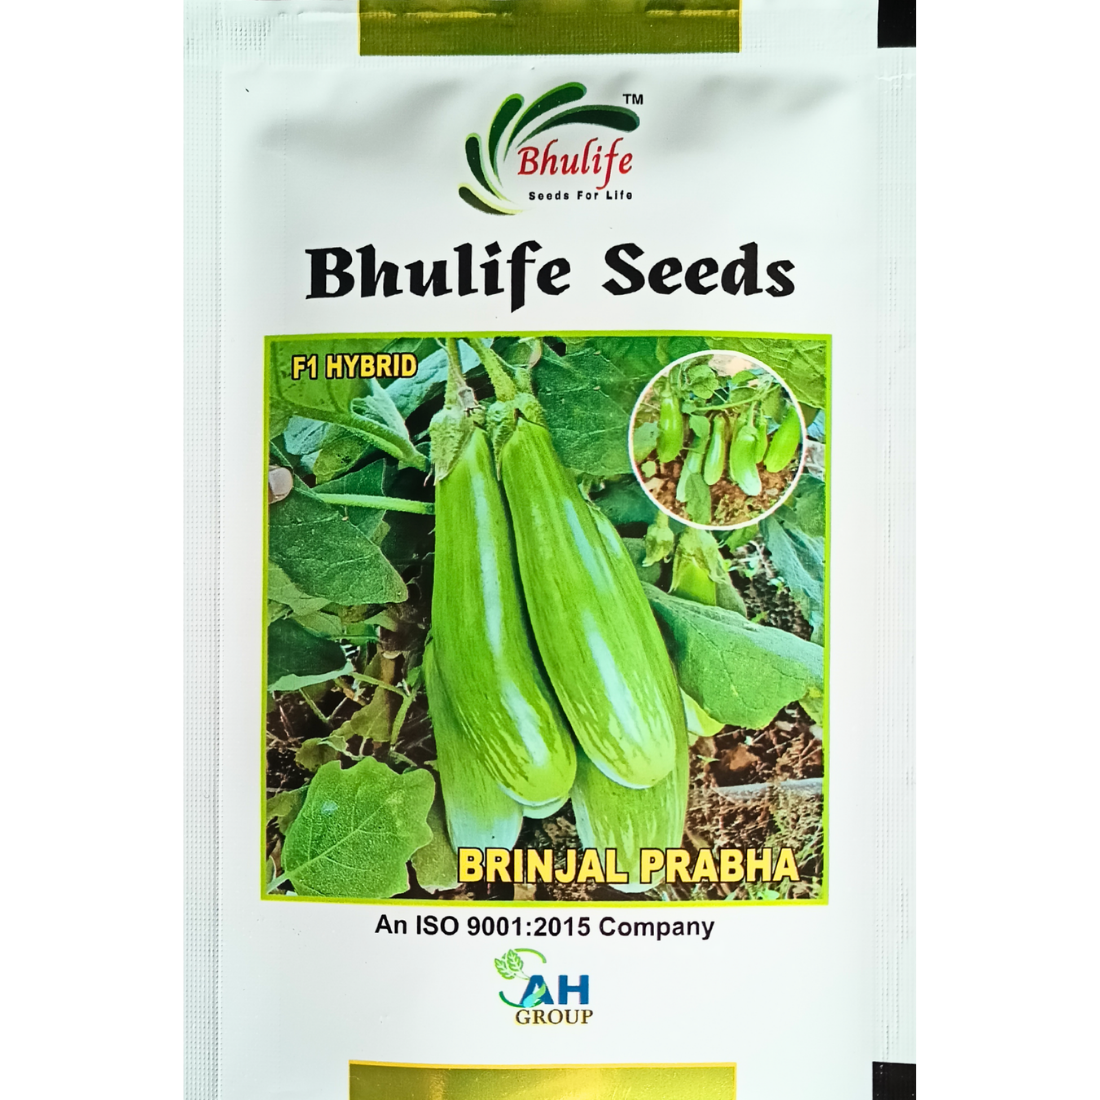 Bhulife Hybrid Brinjal Seeds Prabha (10g)